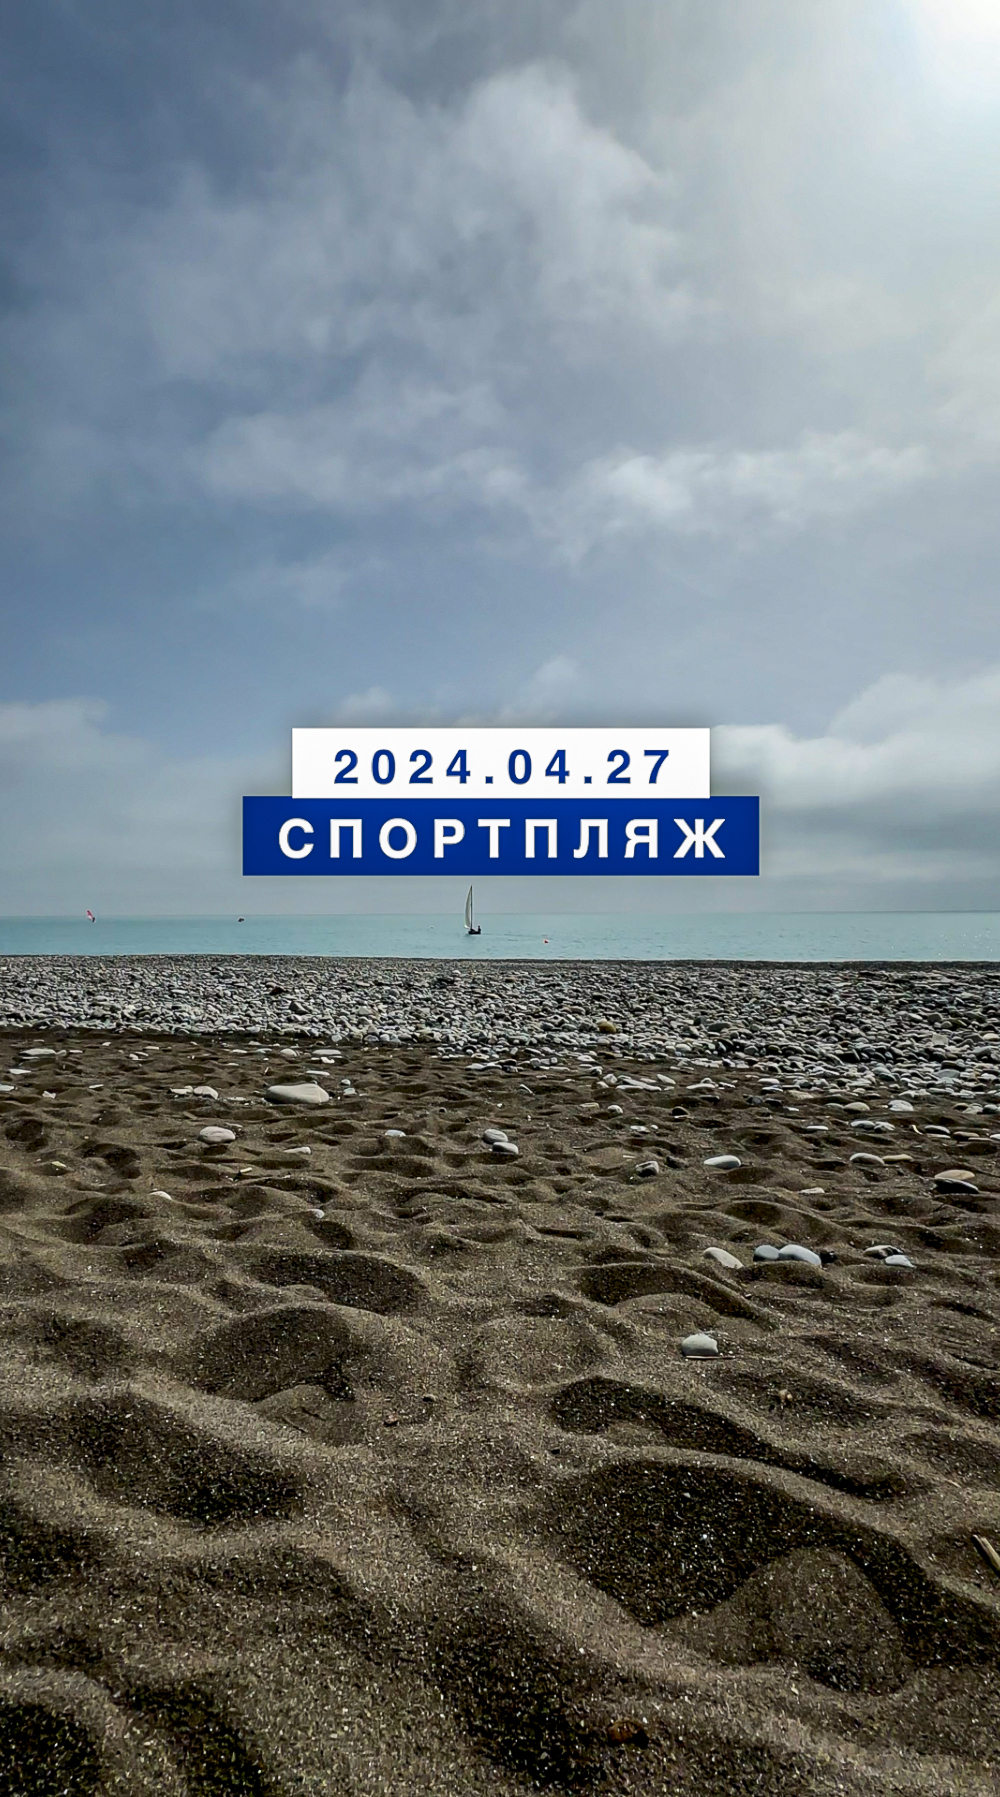 Обстановка на море в Лазаревском 28 апреля 2024, Спортпляж.